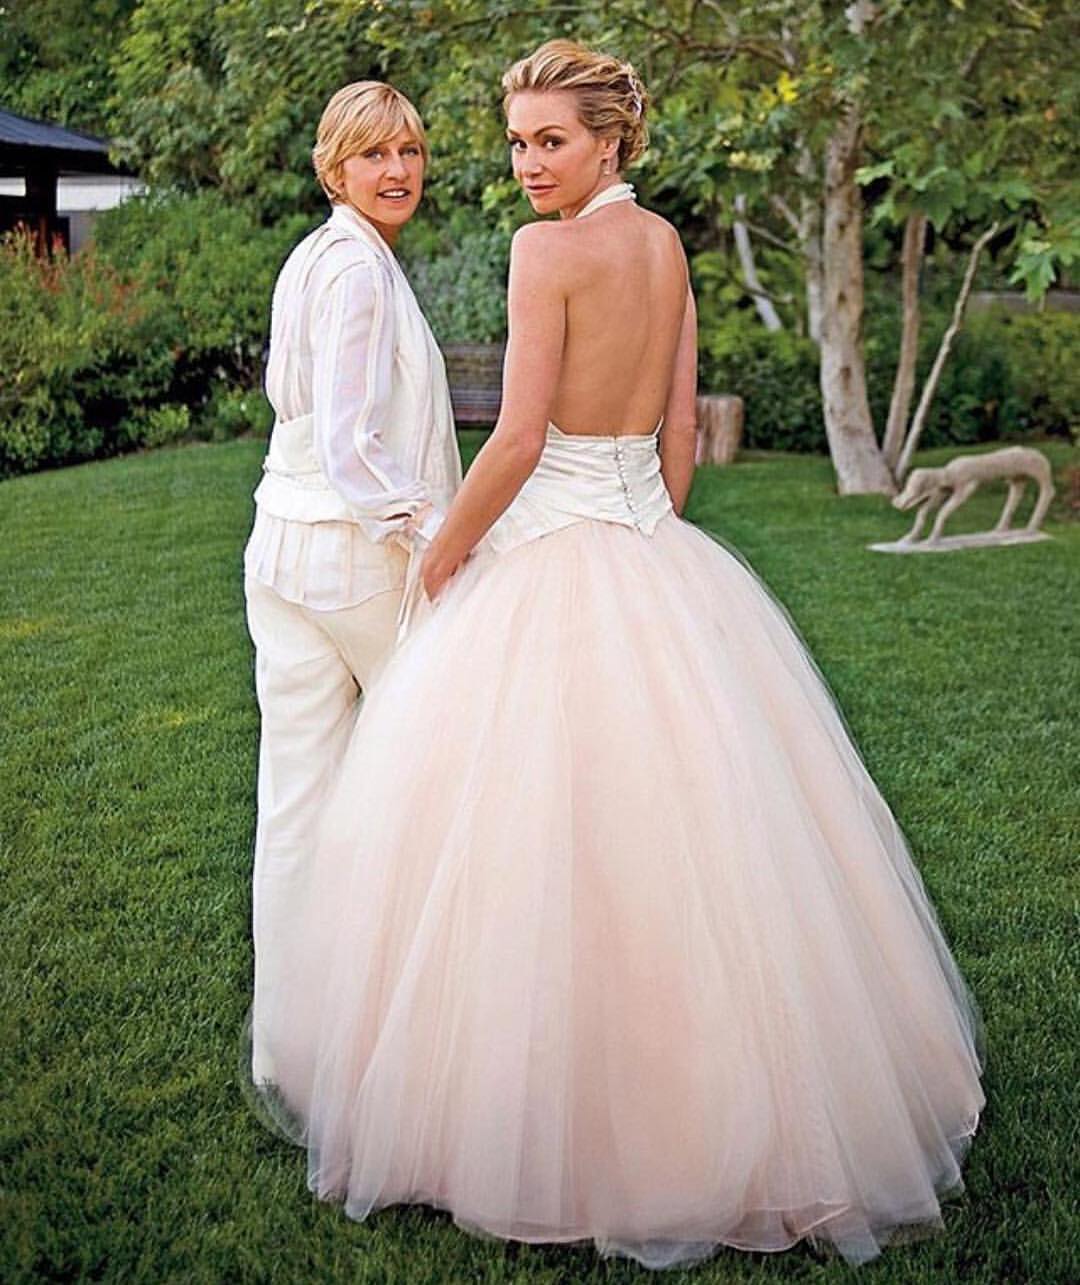 Portia de Rossi and Ellen Degeneres in Pink on their wedding day